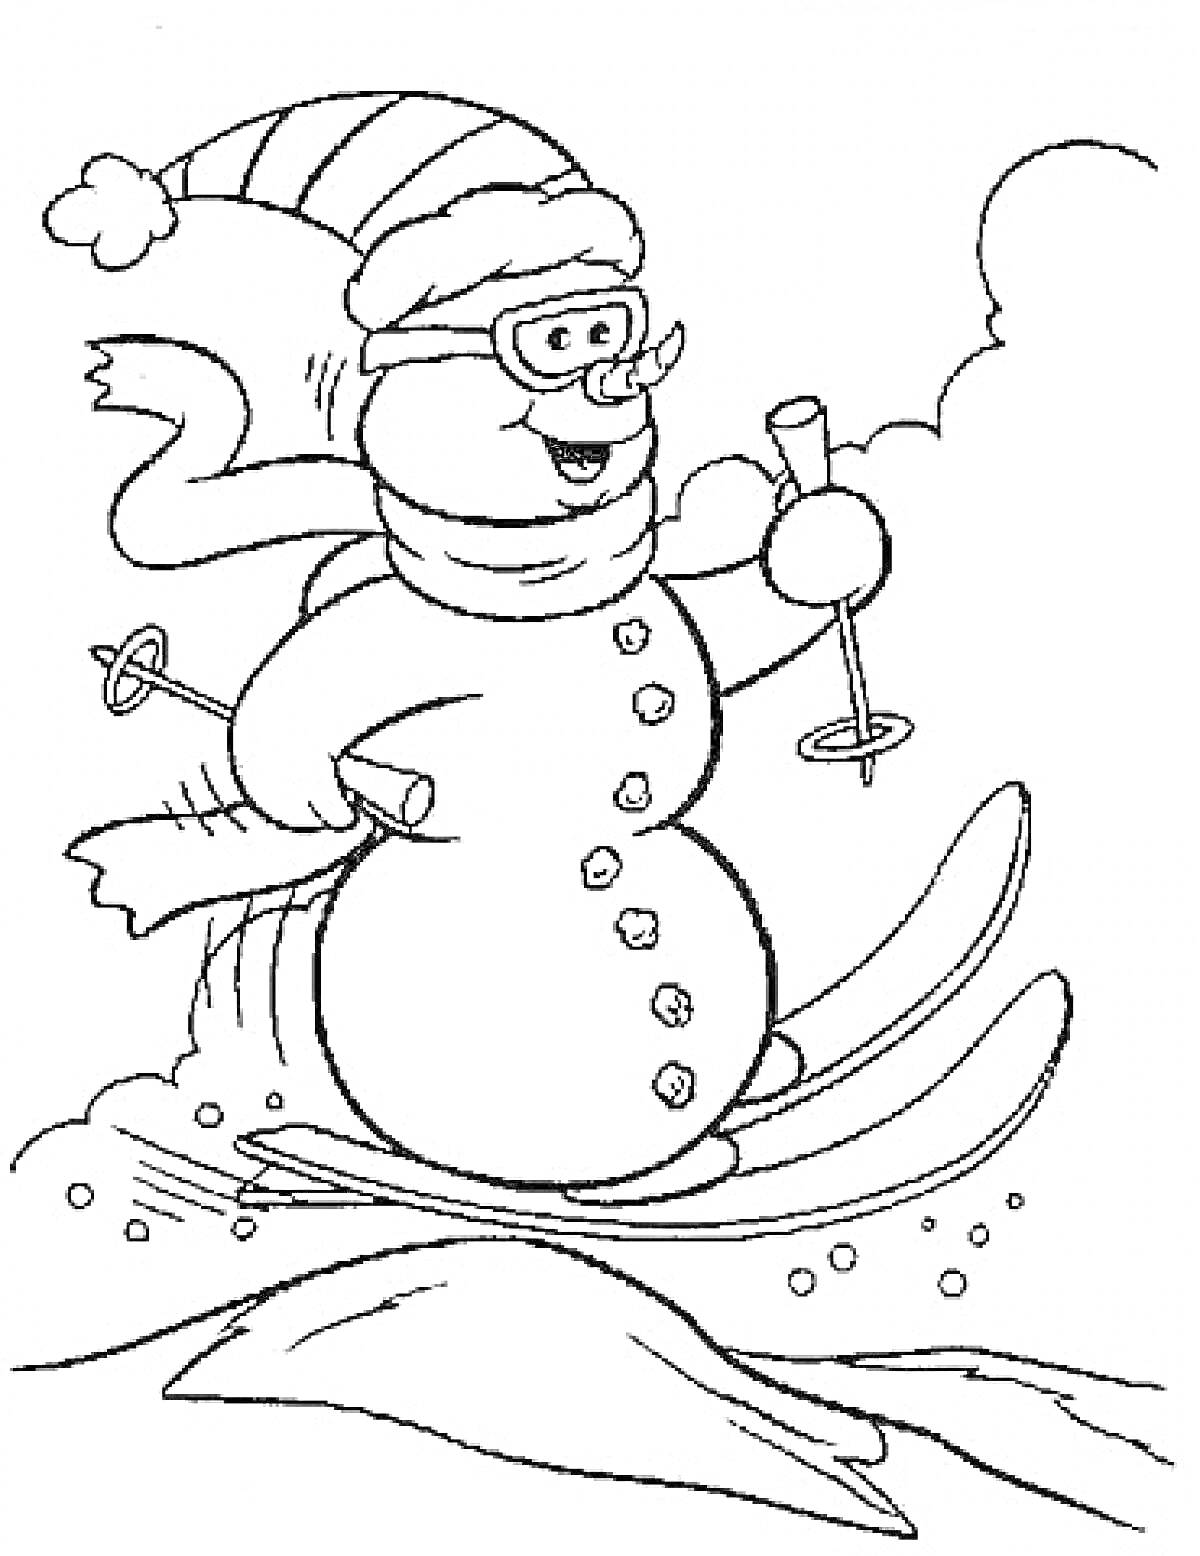 Раскраска Снеговик на лыжах в шапке и шарфе, с очками и палками